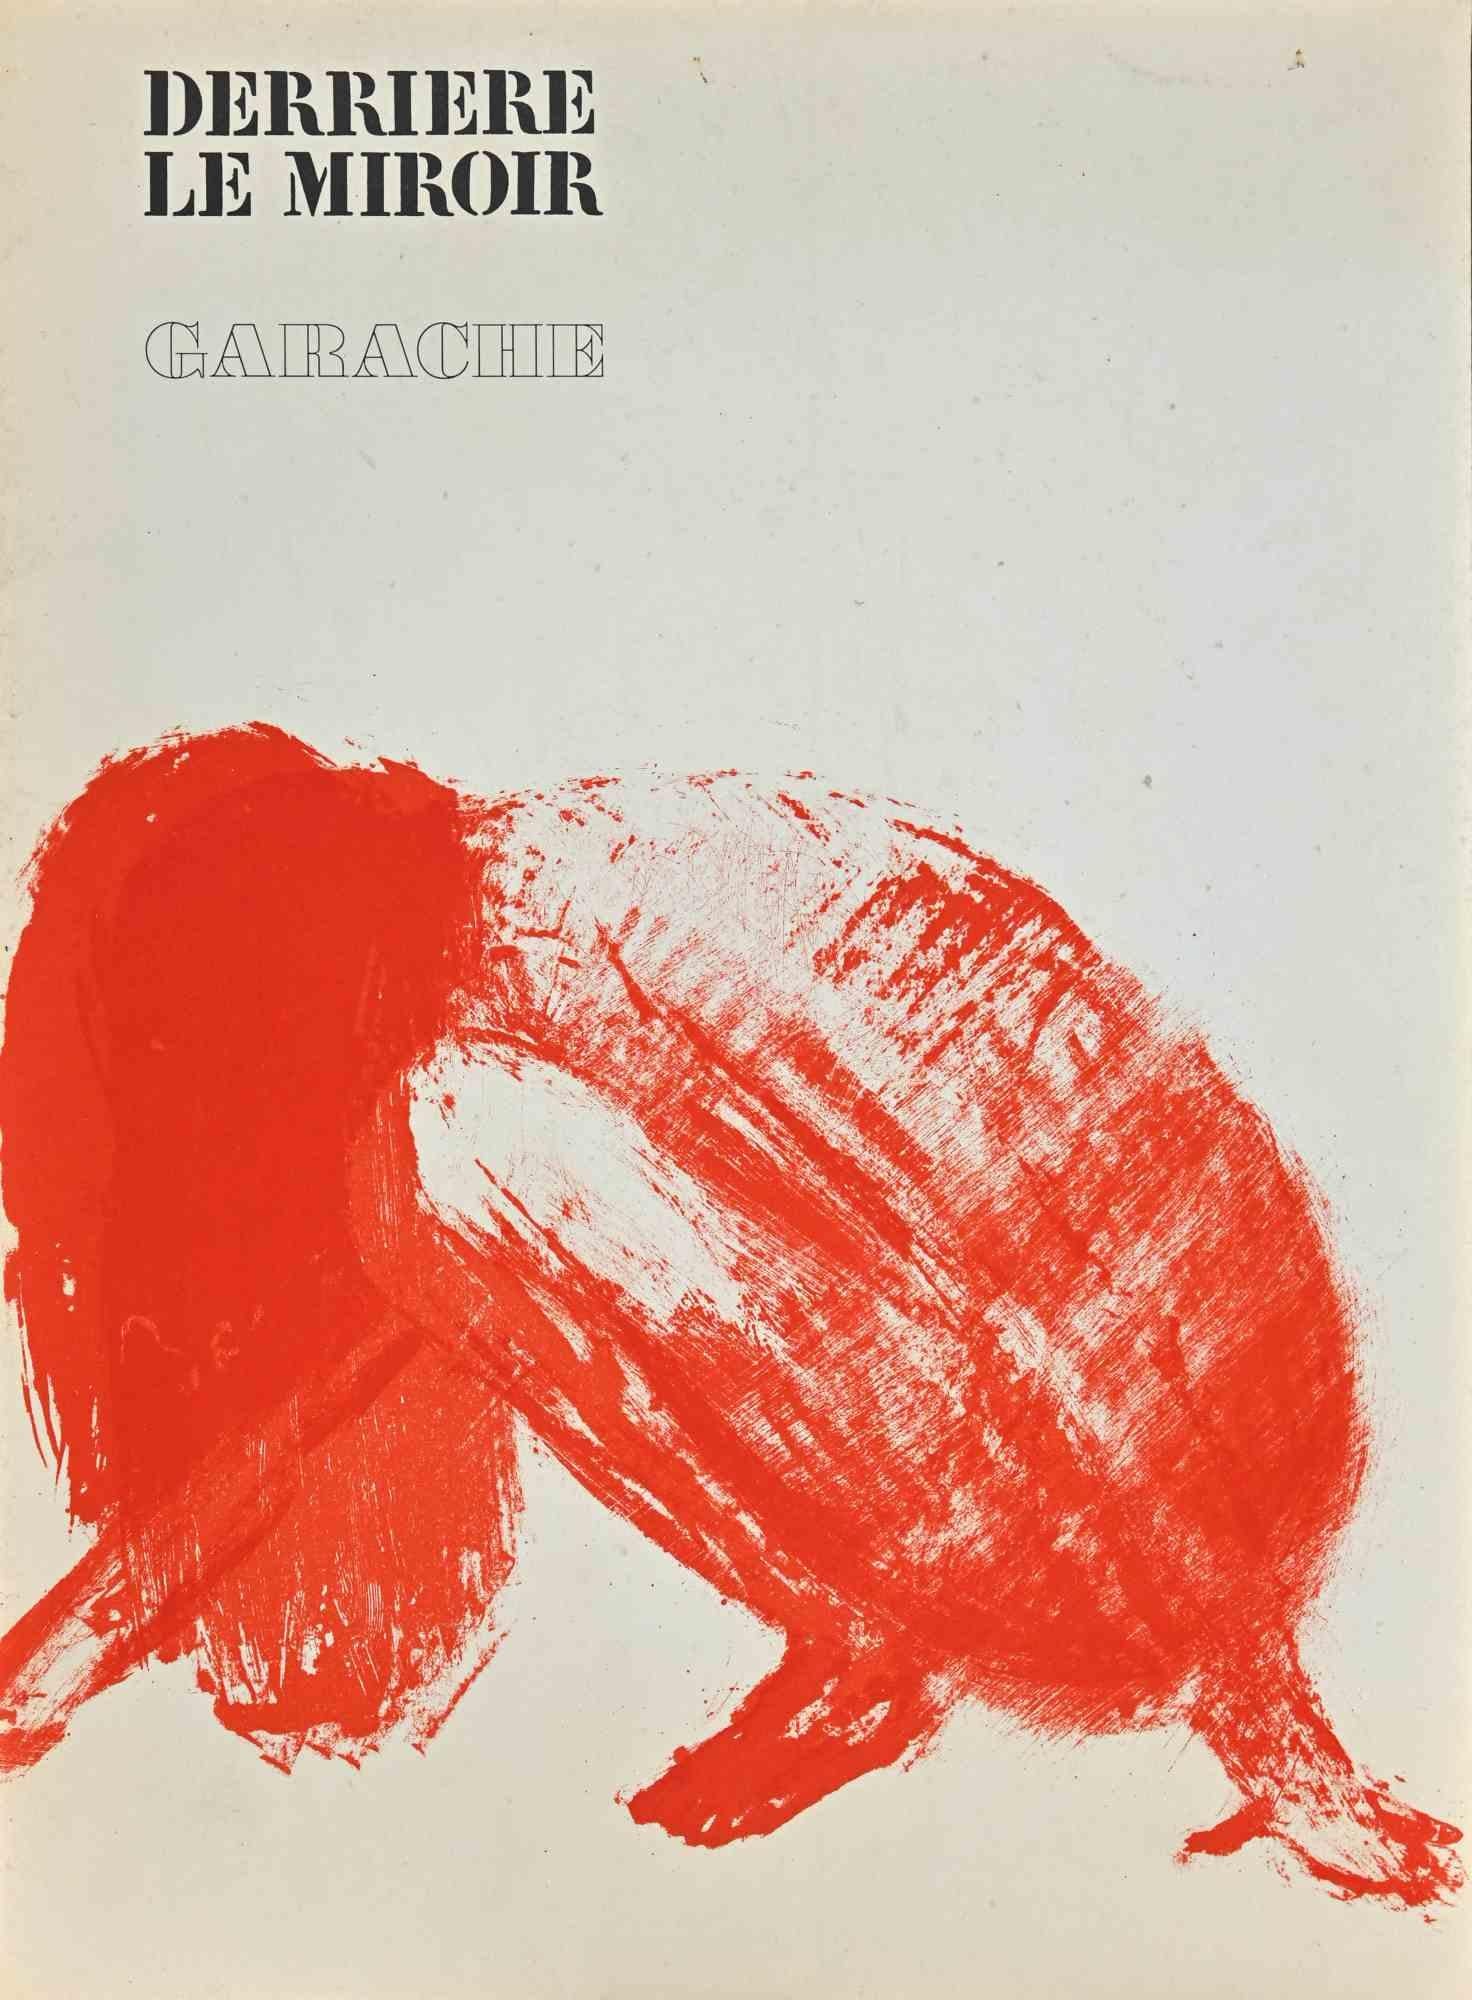 Femme est une Lithographie vintage réalisée par Claude Garache dans les années 1975.

Derrière Le Miroir en haut.

Éditeur Maeght, France au dos.

Bonnes conditions.

L'œuvre d'art est représentée par des traits sûrs et un rouge vif.